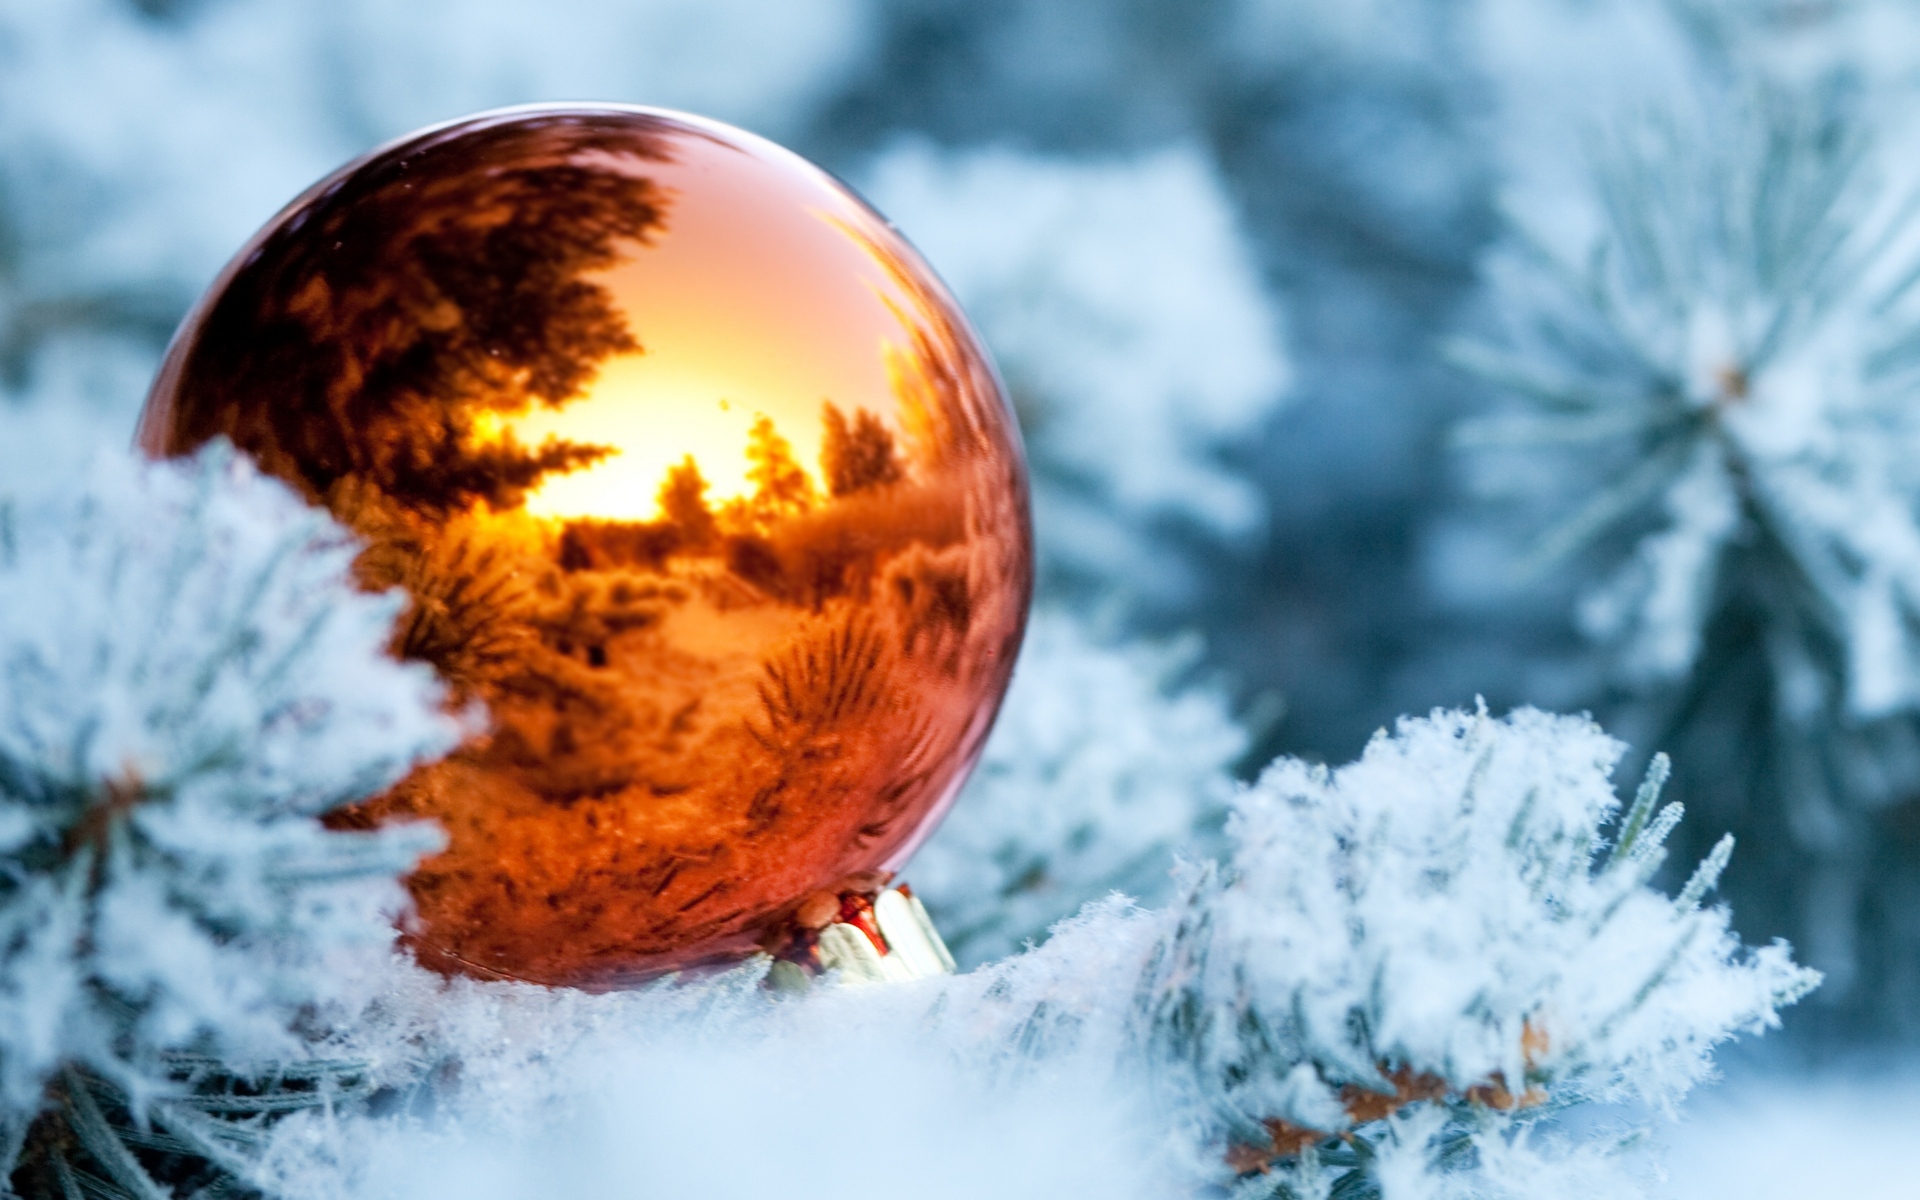 Картинки зима, ветки, снег, ель, дерево, мяч, рождество украшения, отражение, новый год фото и обои на рабочий стол